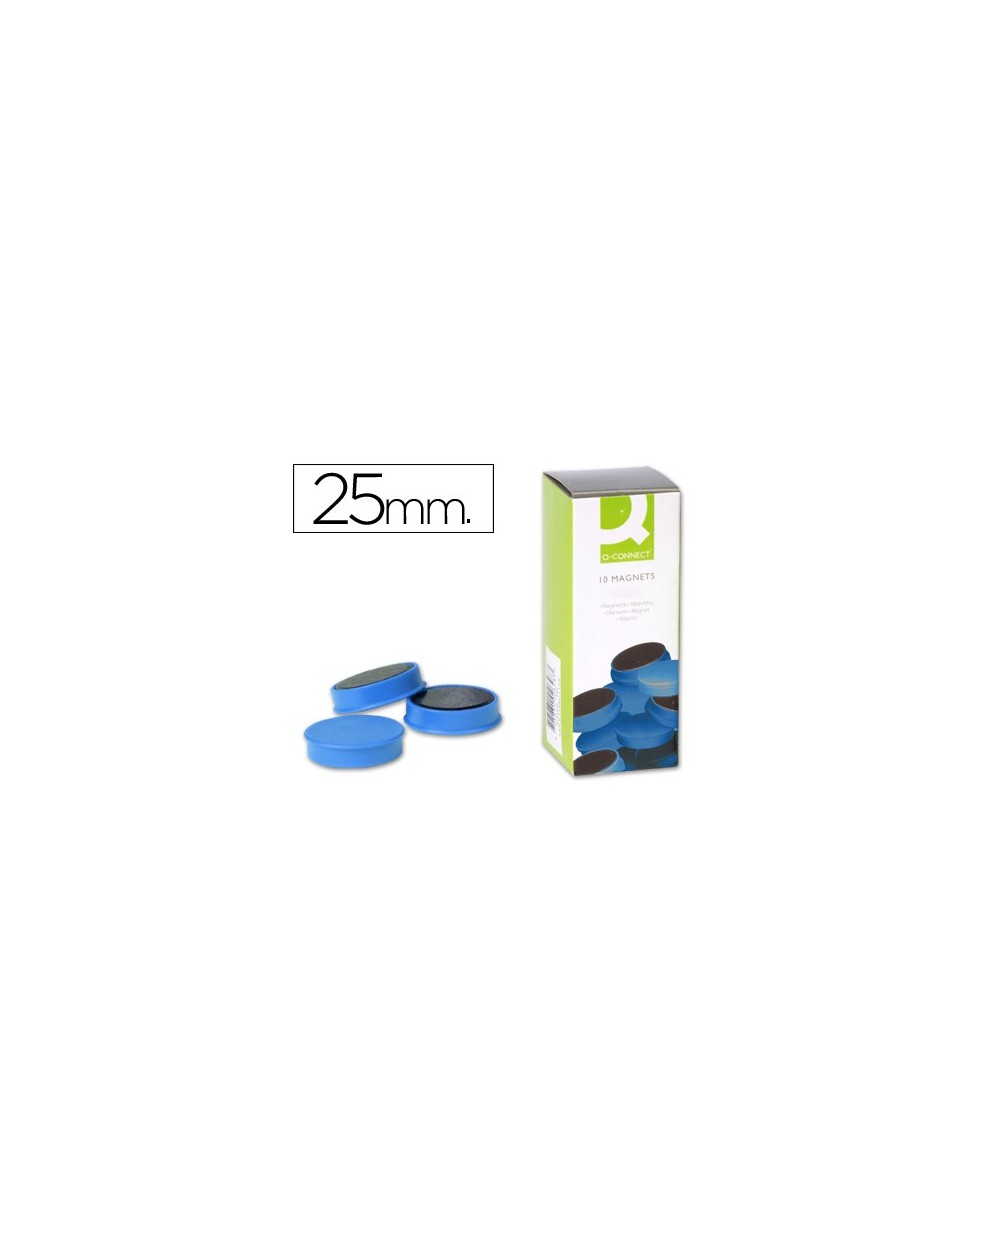 Imanes para sujecion q connect ideal para pizarras magneticas25 mm azul caja de 10 imanes